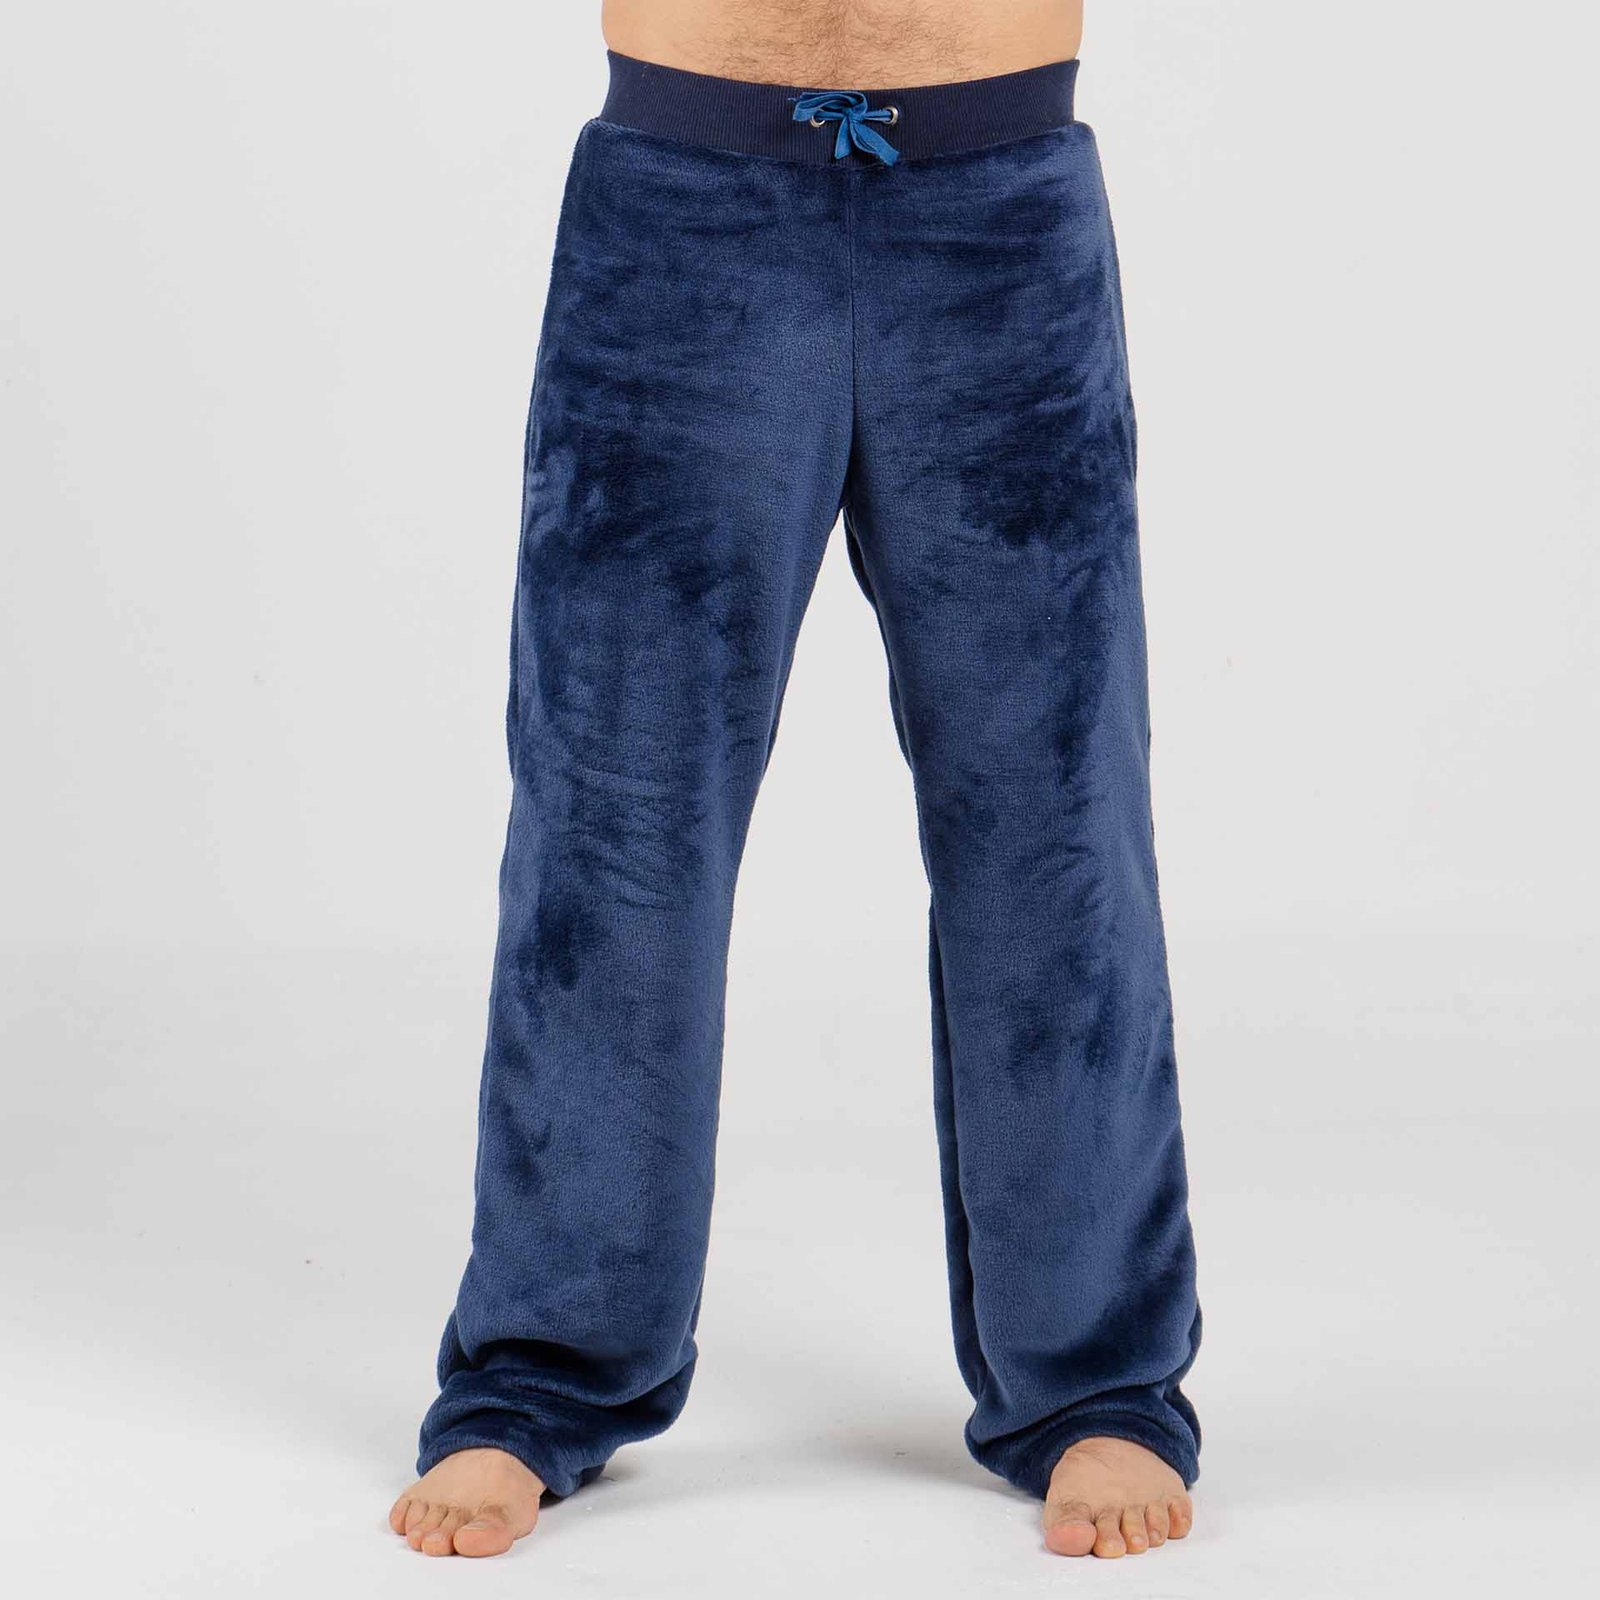 Pijama térmica para hombre - Pantalón largo pijama hombre - Yeti